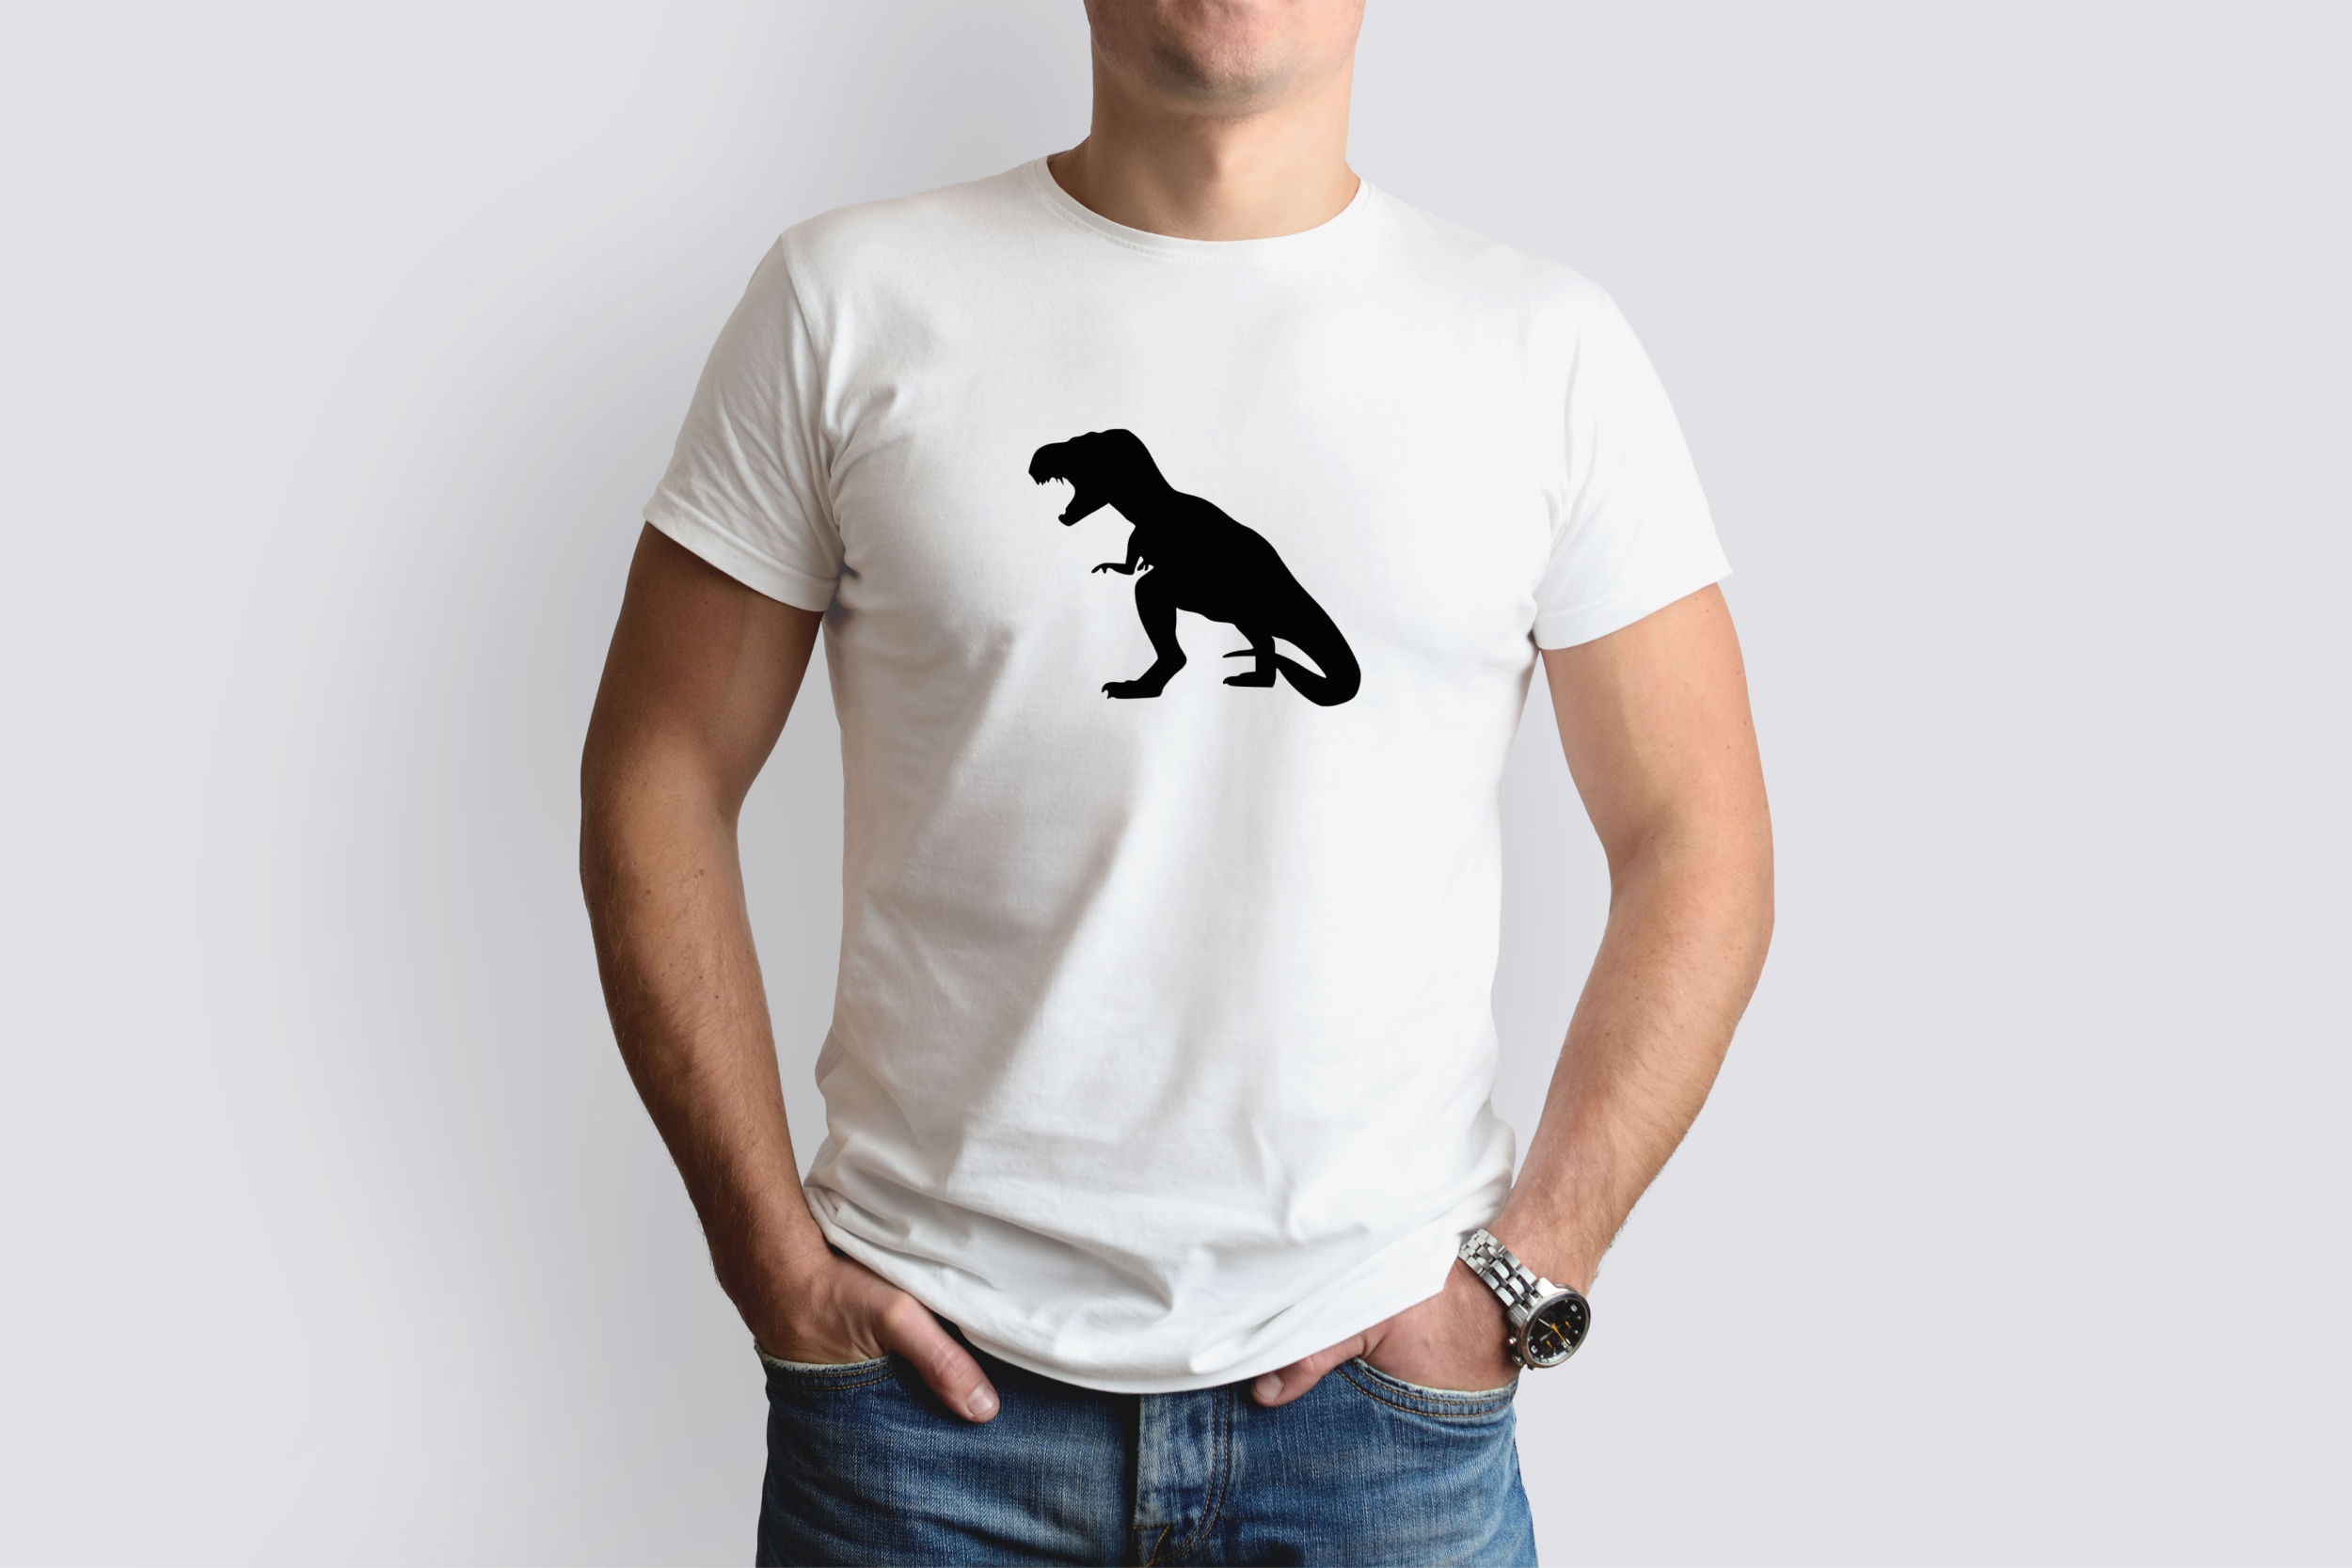 t rex silhouette t shirt designs bundle 06 630